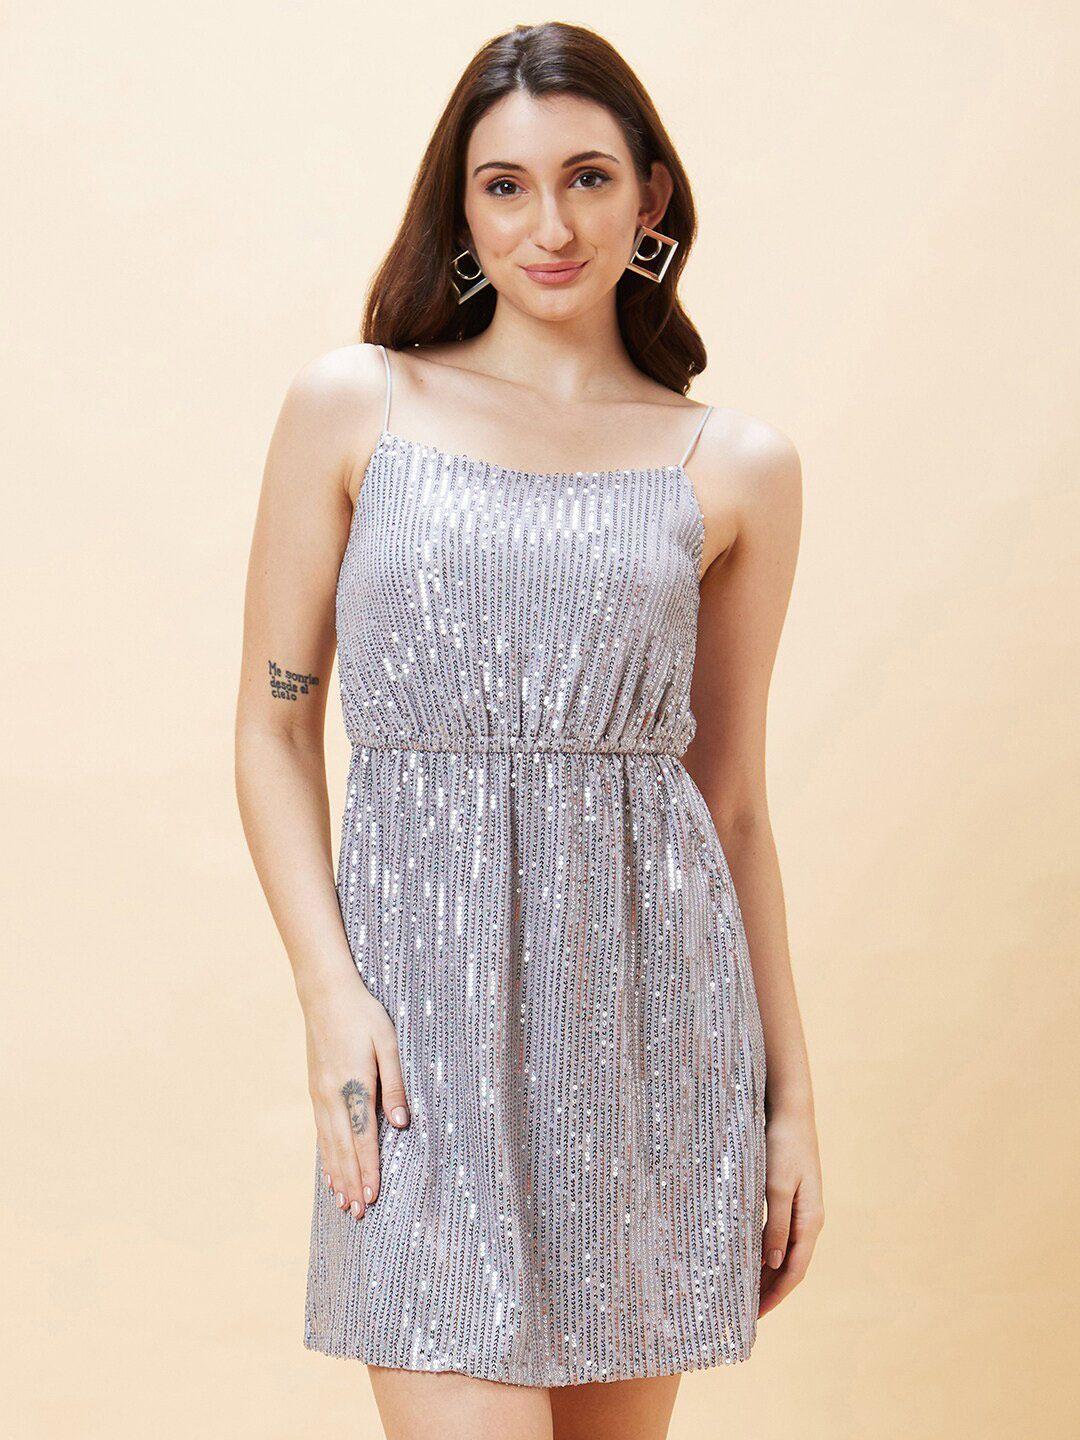 globus-silver-toned-embellished-shoulder-straps-sequined-a-line-dress